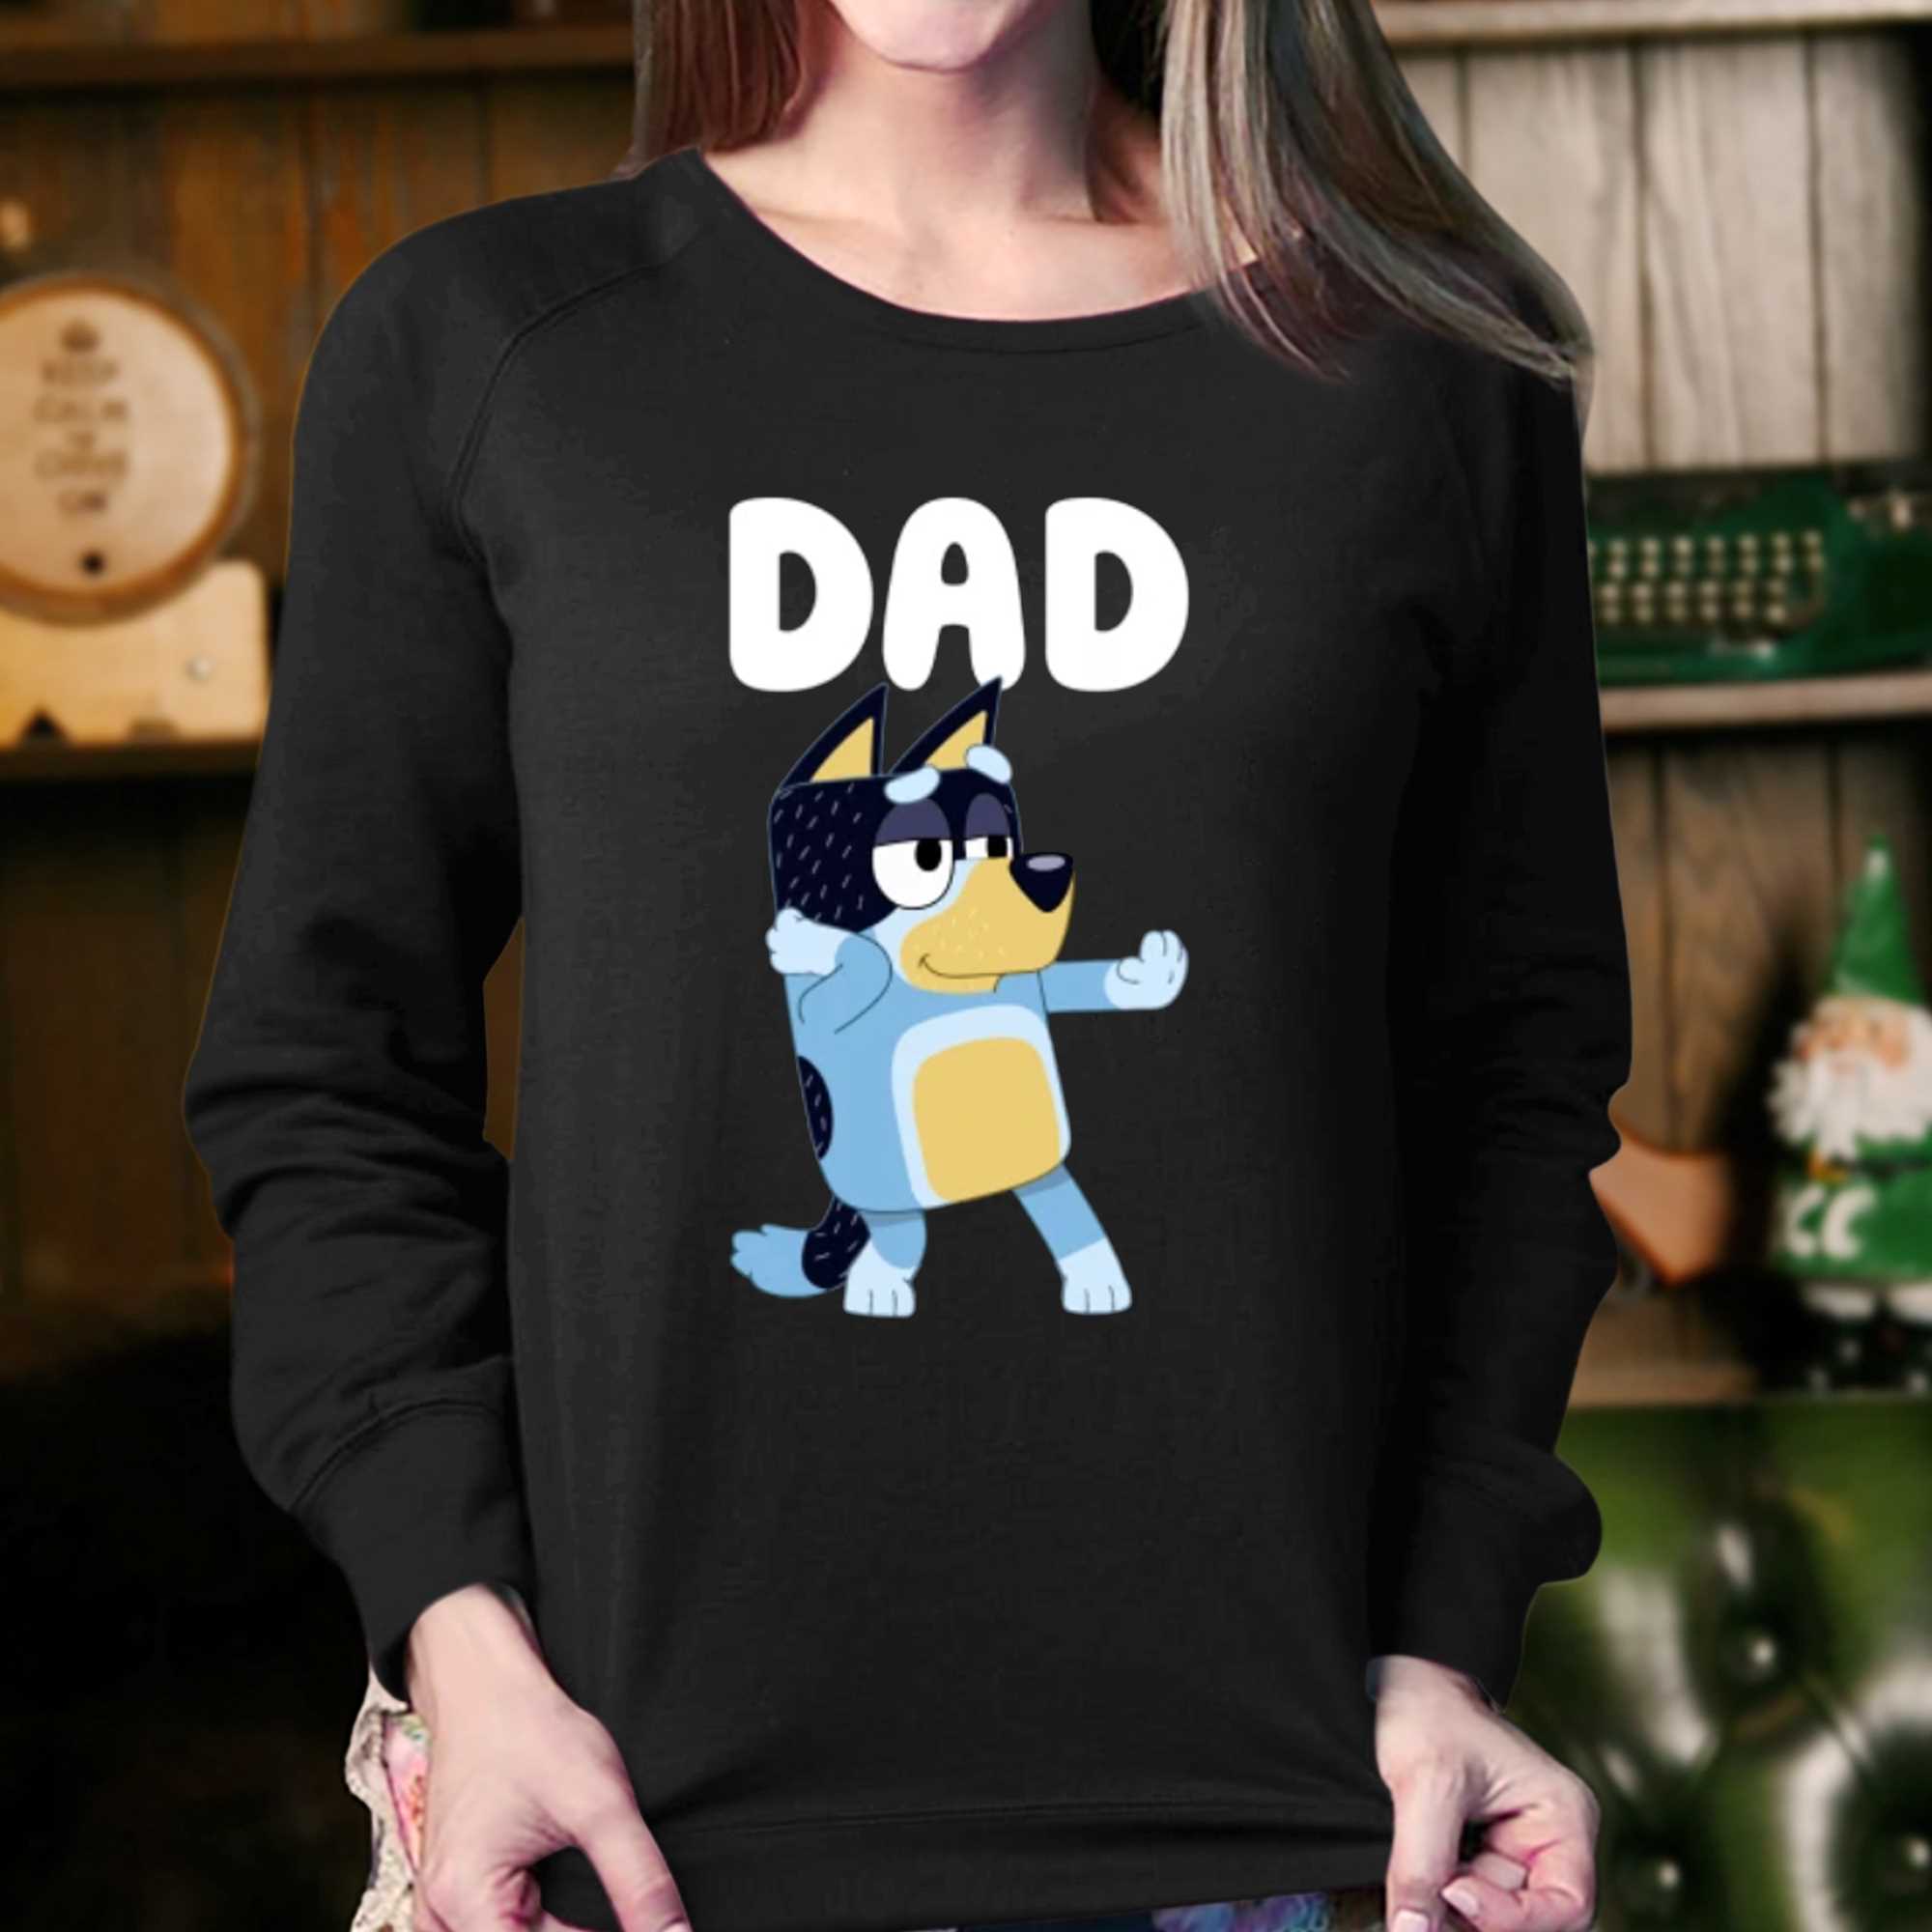 Bluey Dadlife Shirt, Rad Dad Bluey Shirt, Funny Bluey Shirt, Bluey